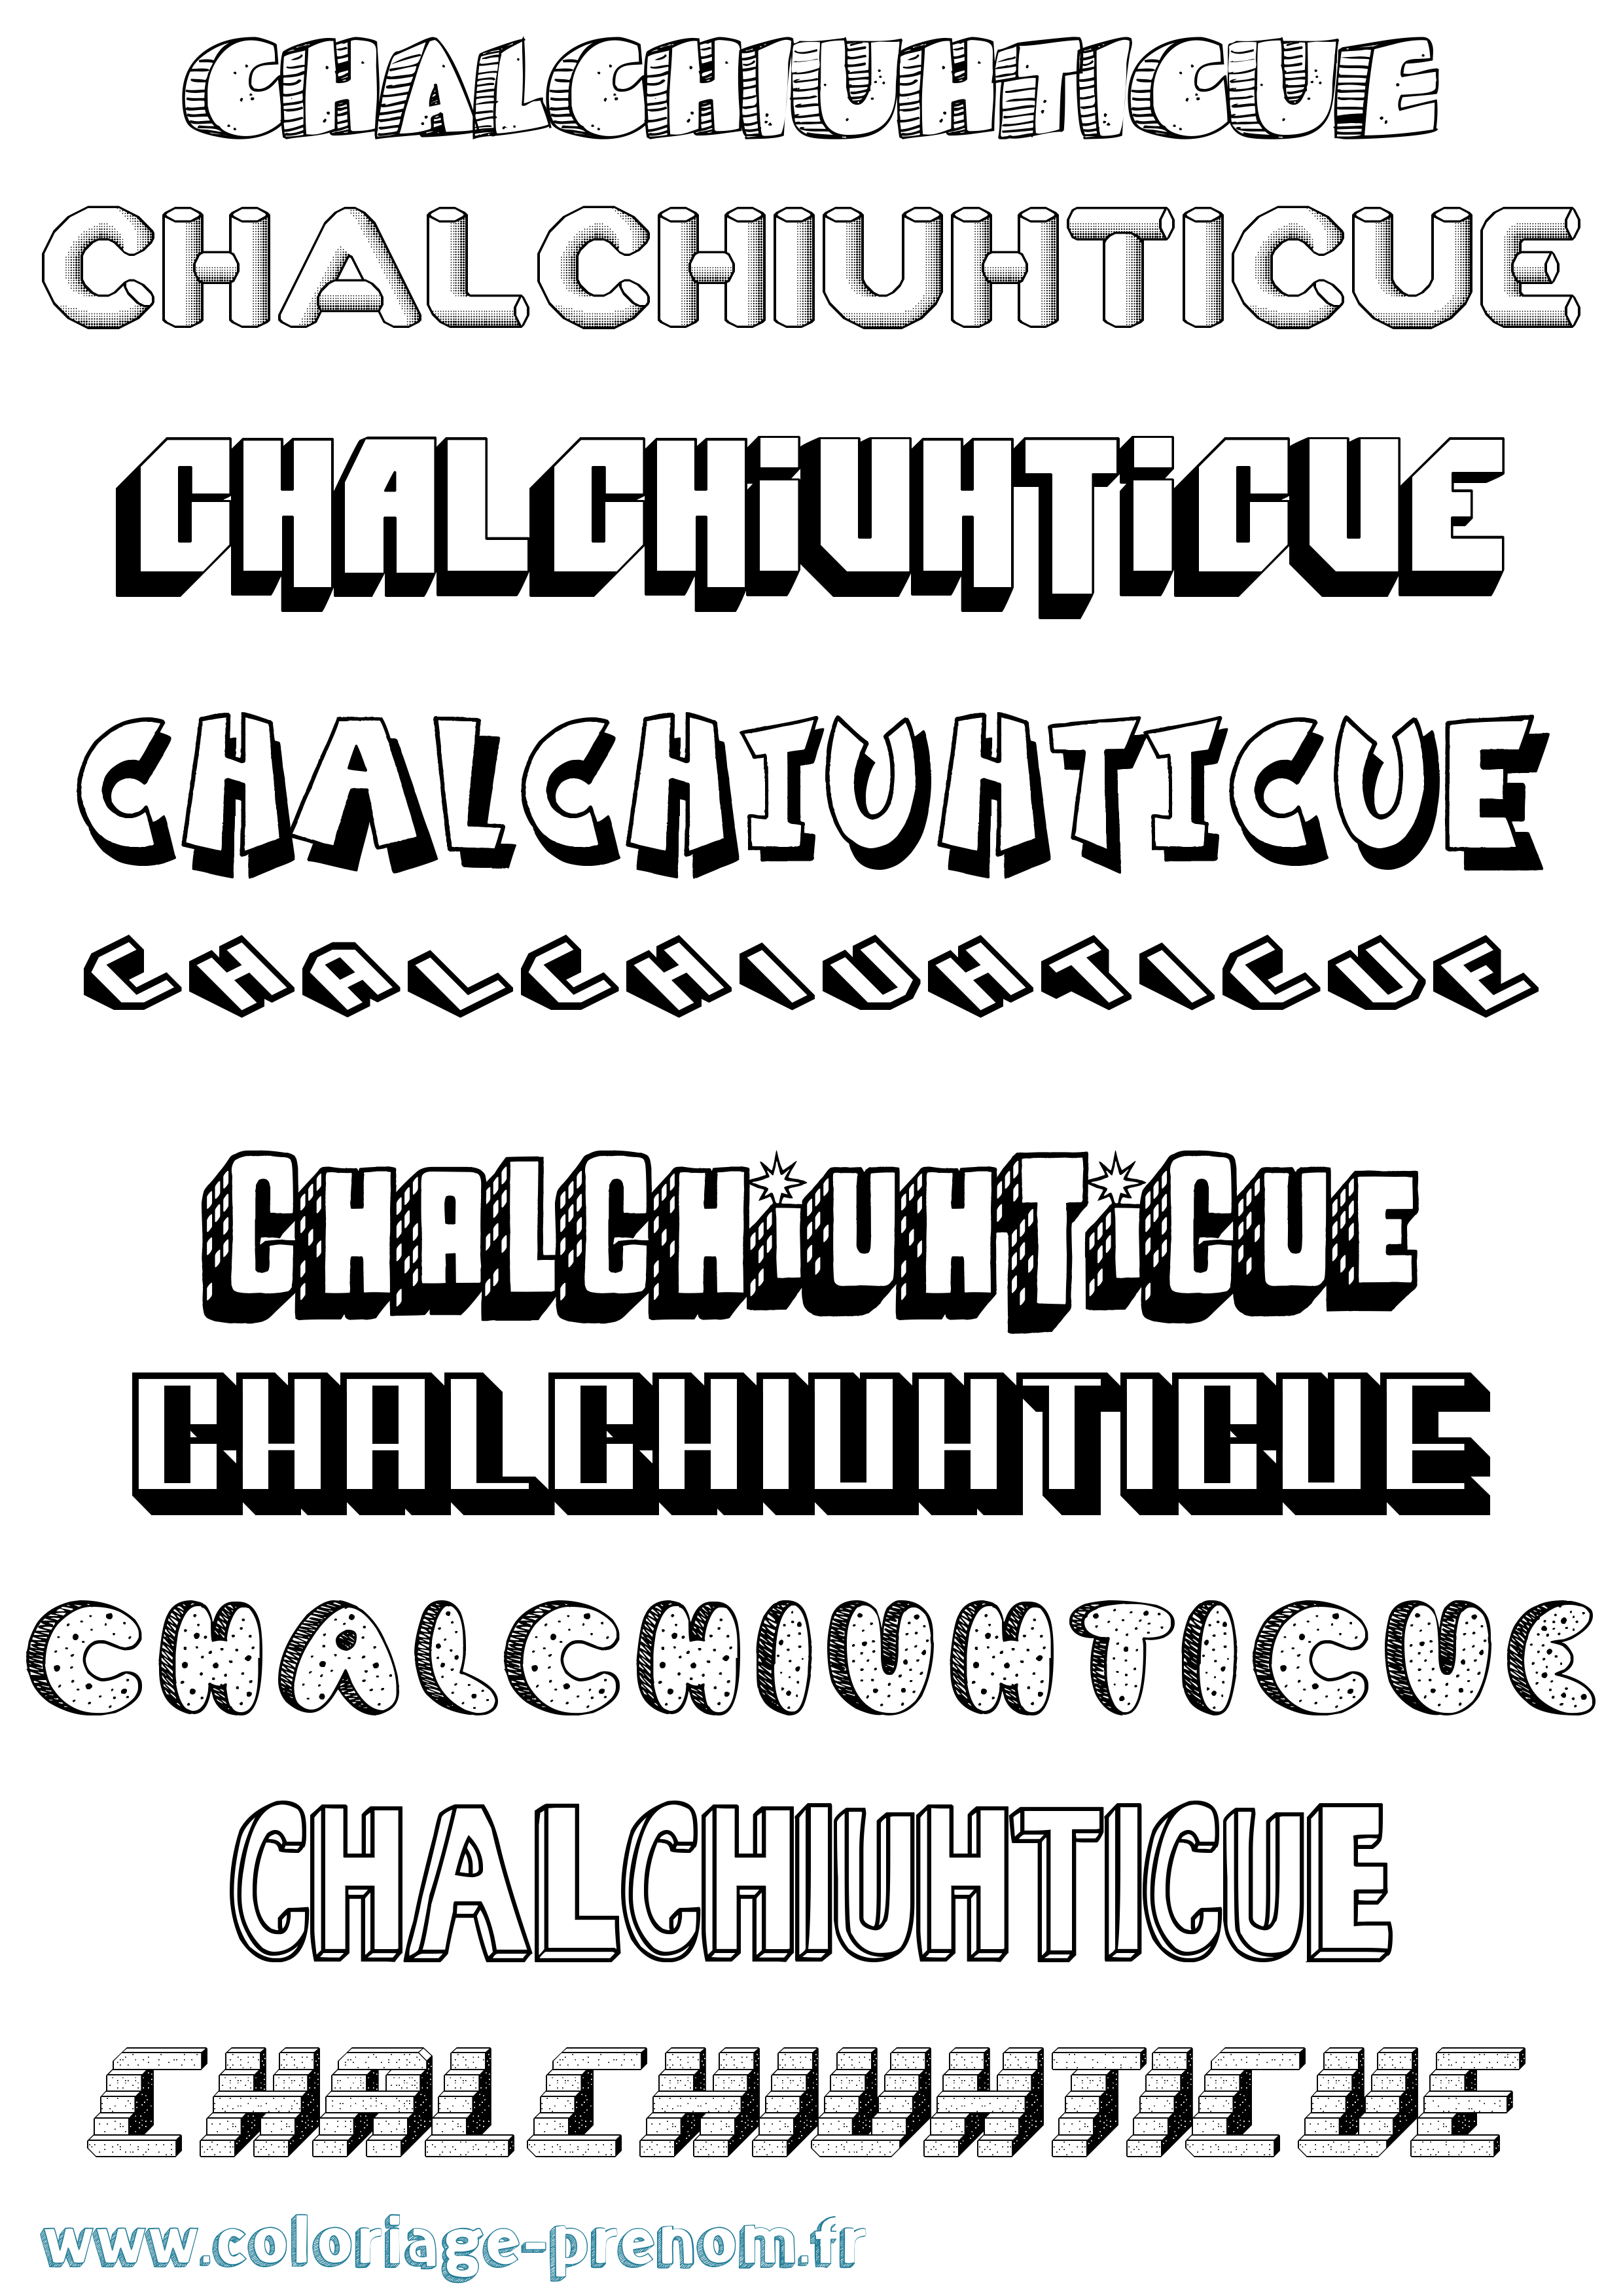 Coloriage prénom Chalchiuhticue Effet 3D